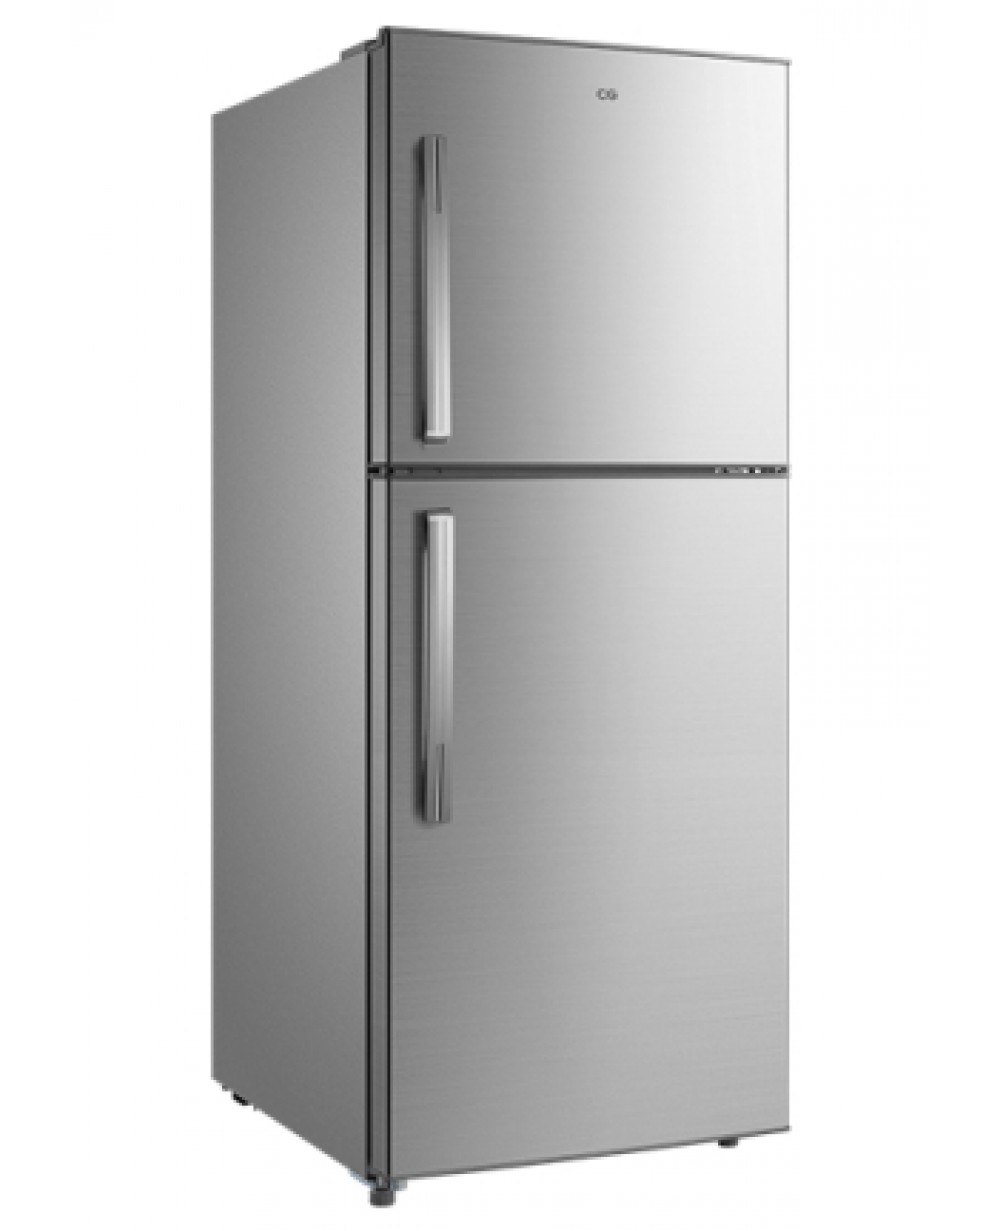 230 ltr refrigerator